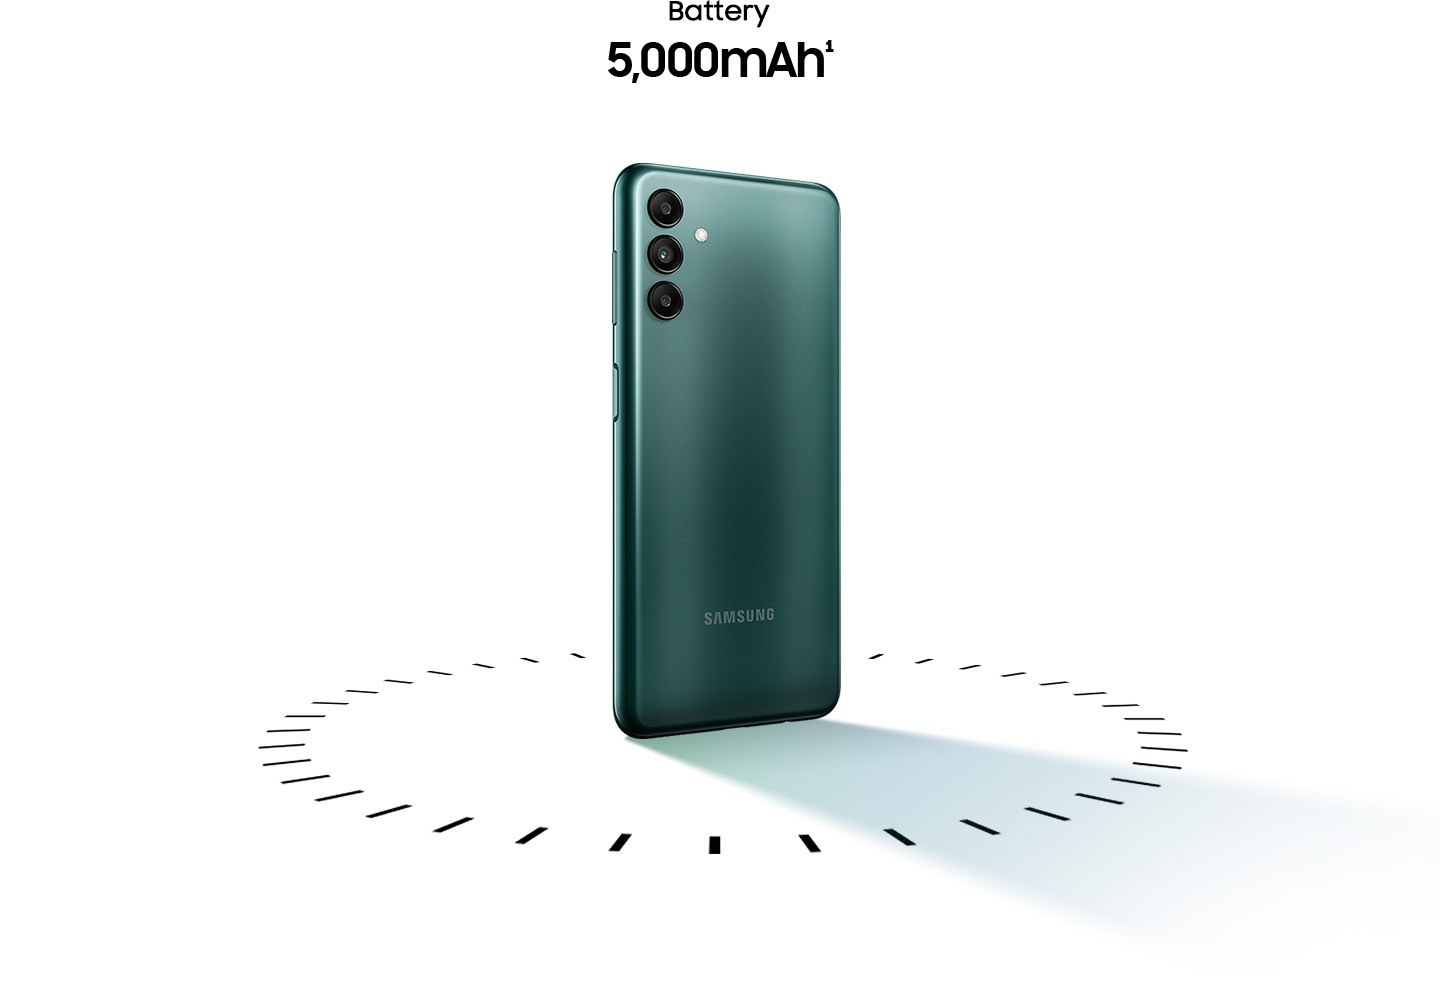 HP Samsung A04s terbaru rilisan 2022 dengan baterai 5.000mAh dan layar 90Hz yang mulus. Samsung Galaxy A04s hadir dengan side fingerprint sensor, warna Green, Copper, Black.